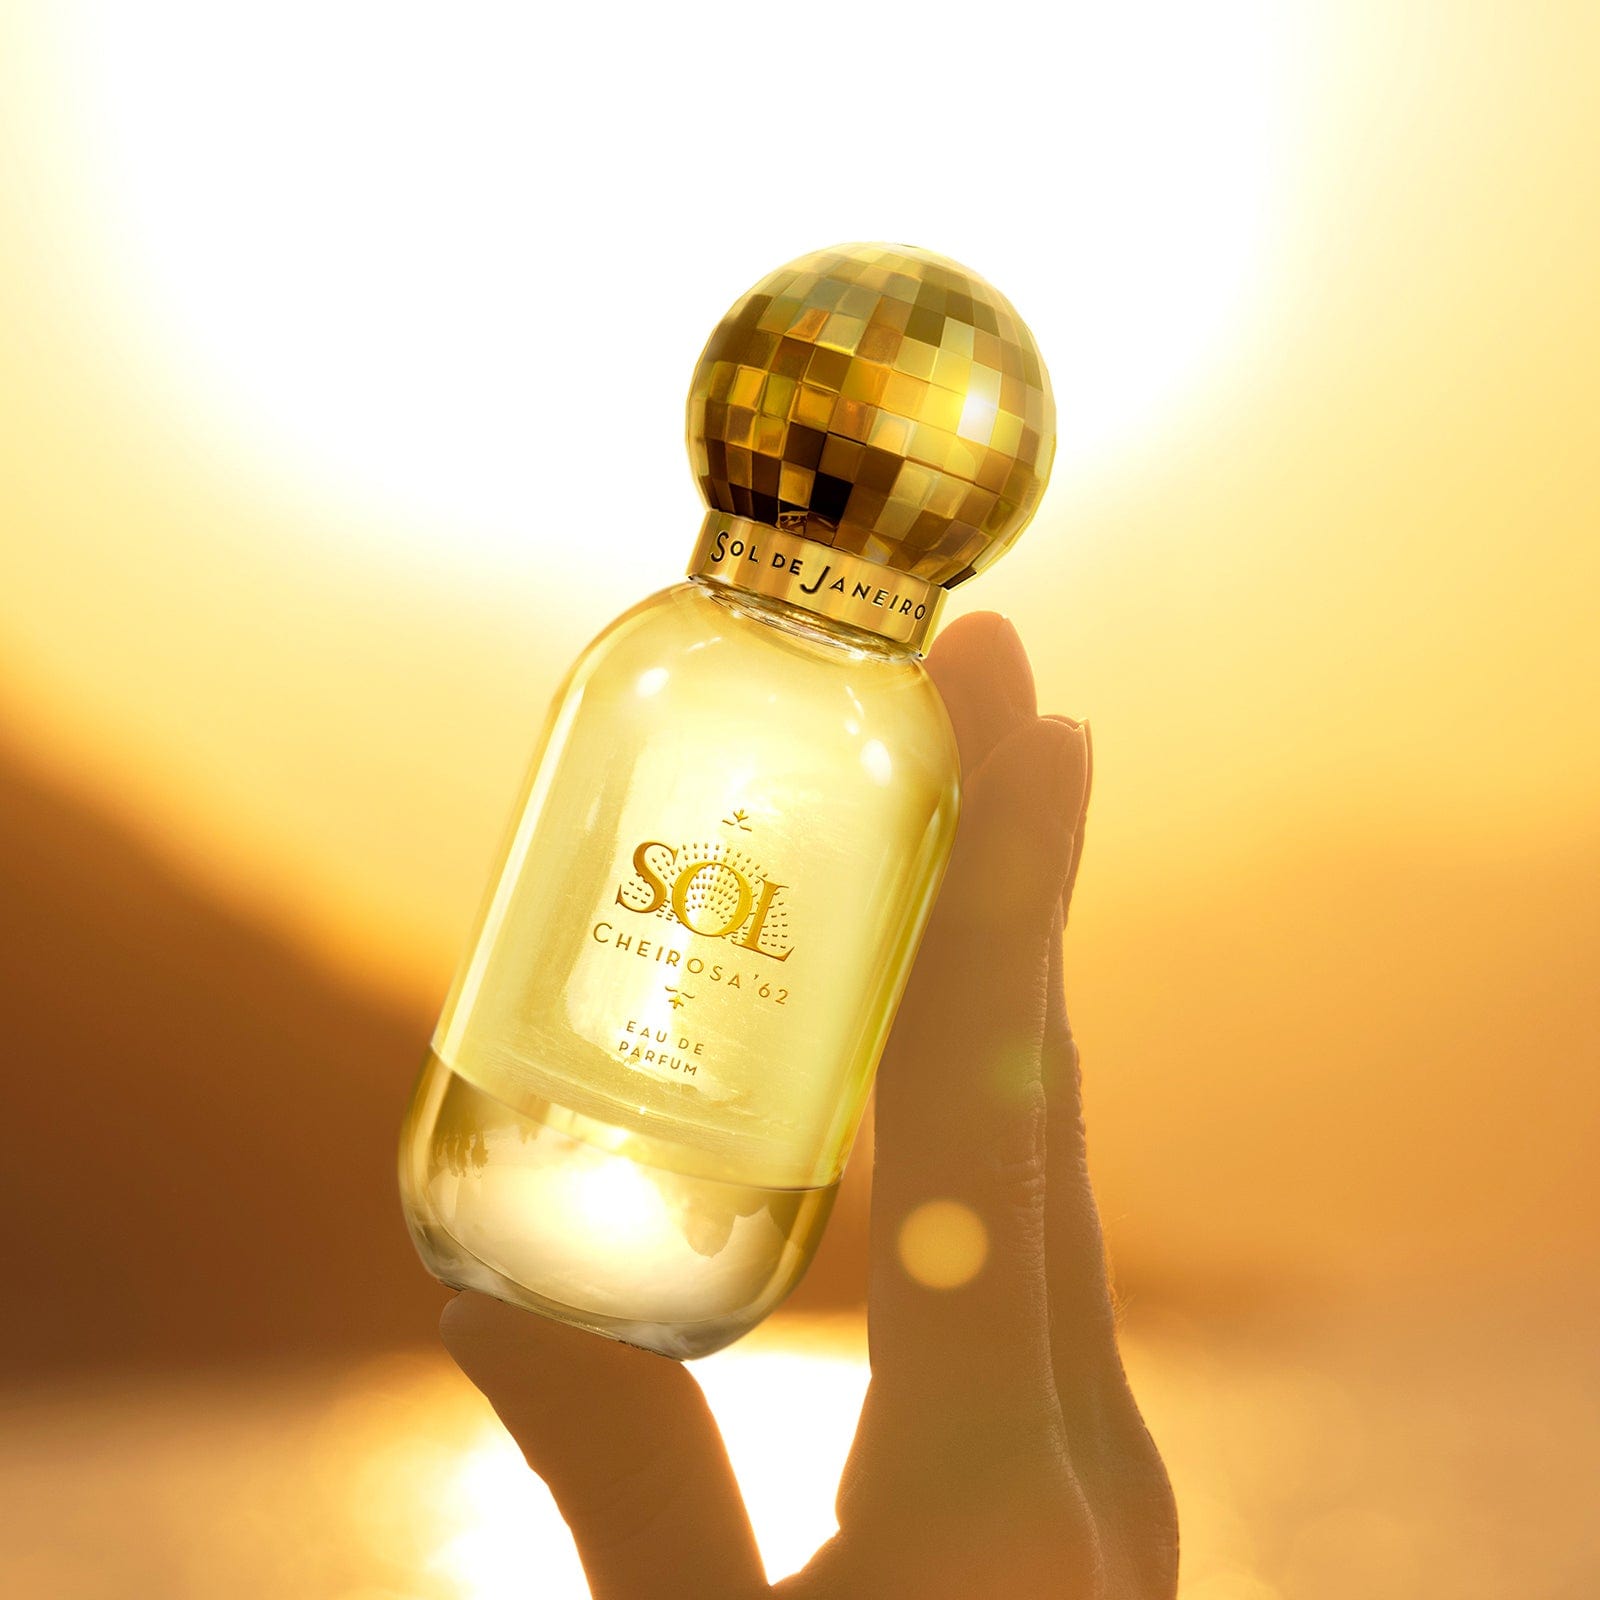 Sol de Janeiro Sol Cheirosa '62 Eau de Parfum